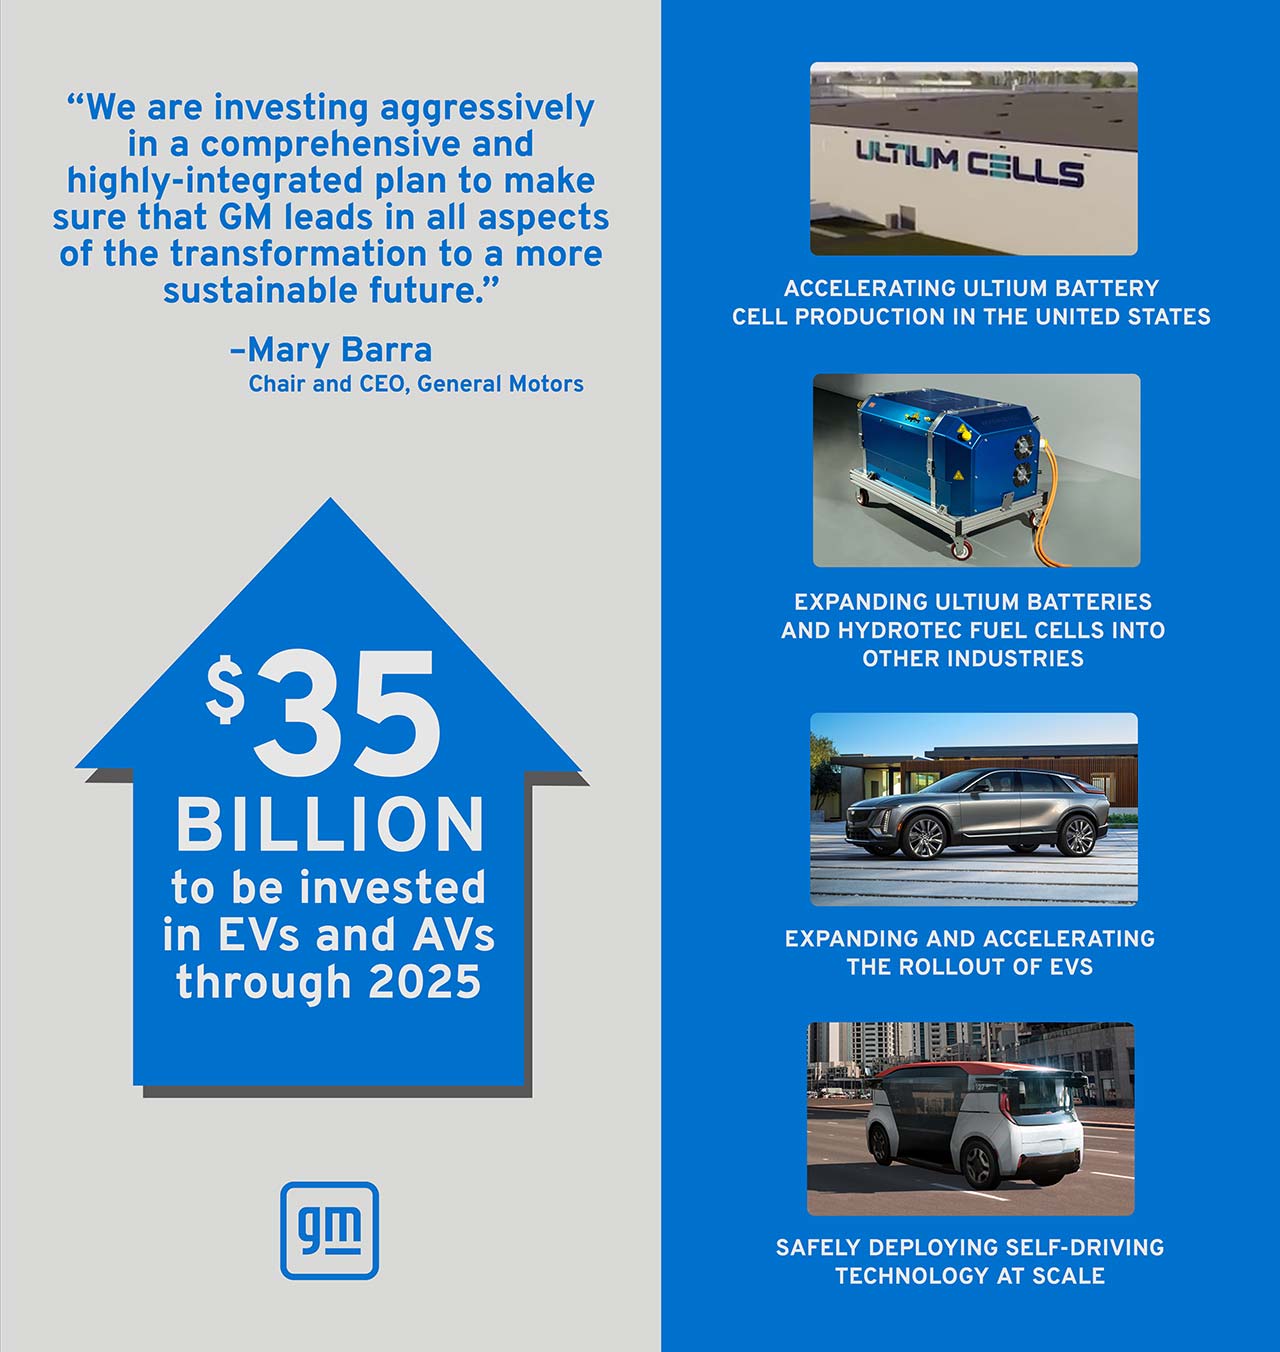 Inversión General Motors autos eléctricos y autónomos